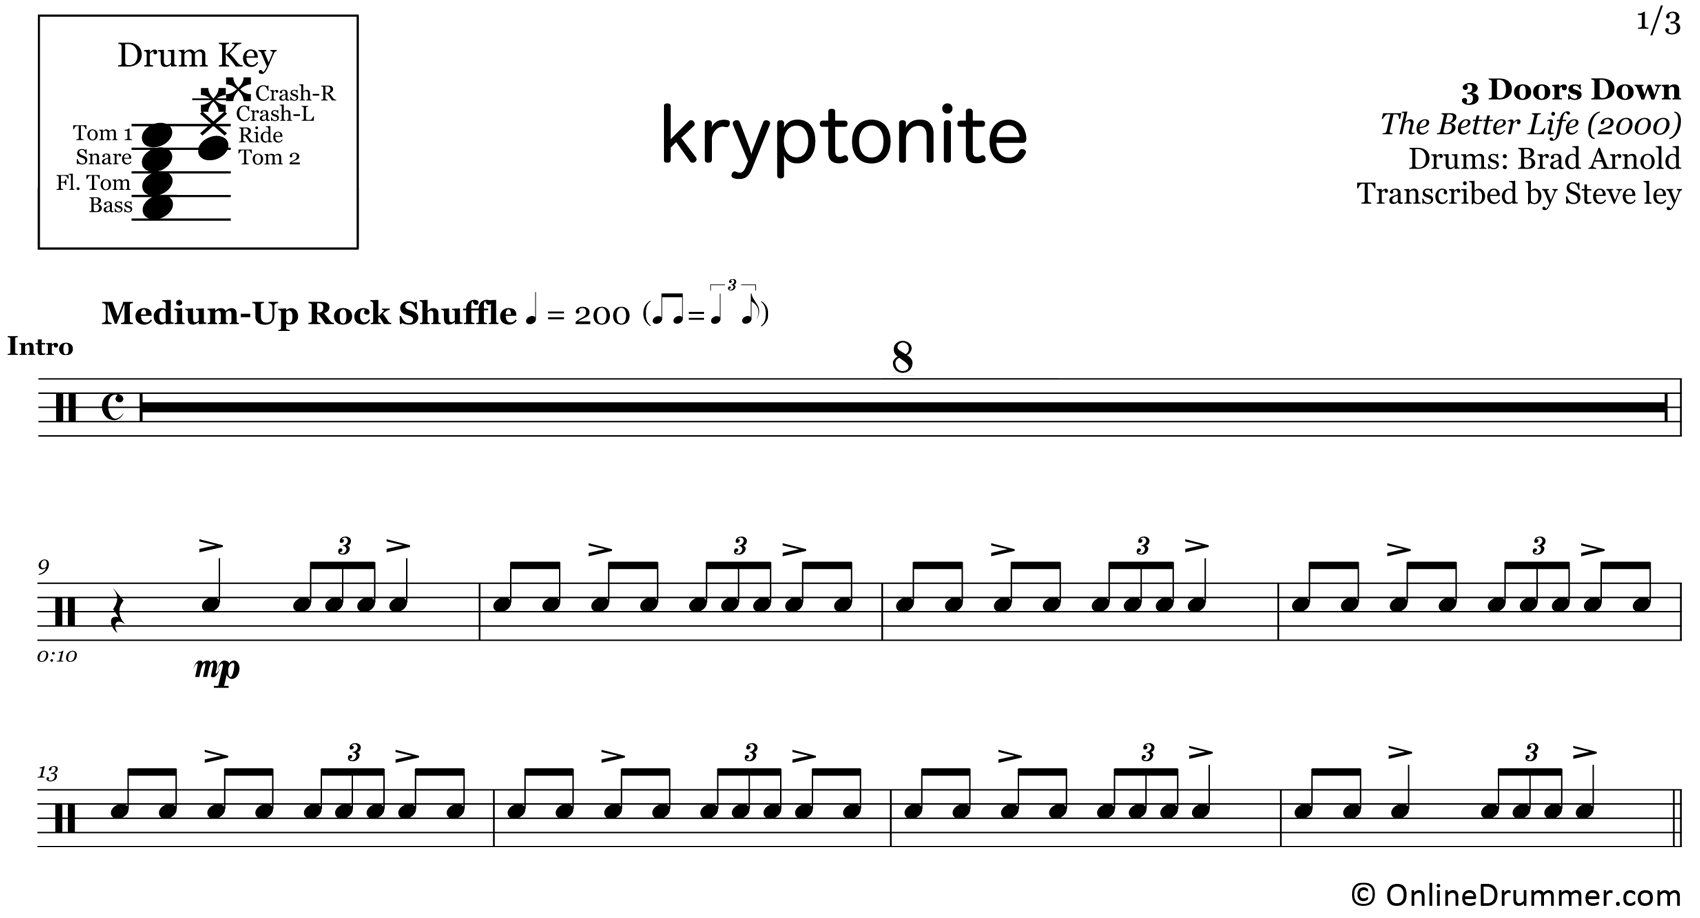 Kryptonite - 3 Doors Down - Drum Sheet Music